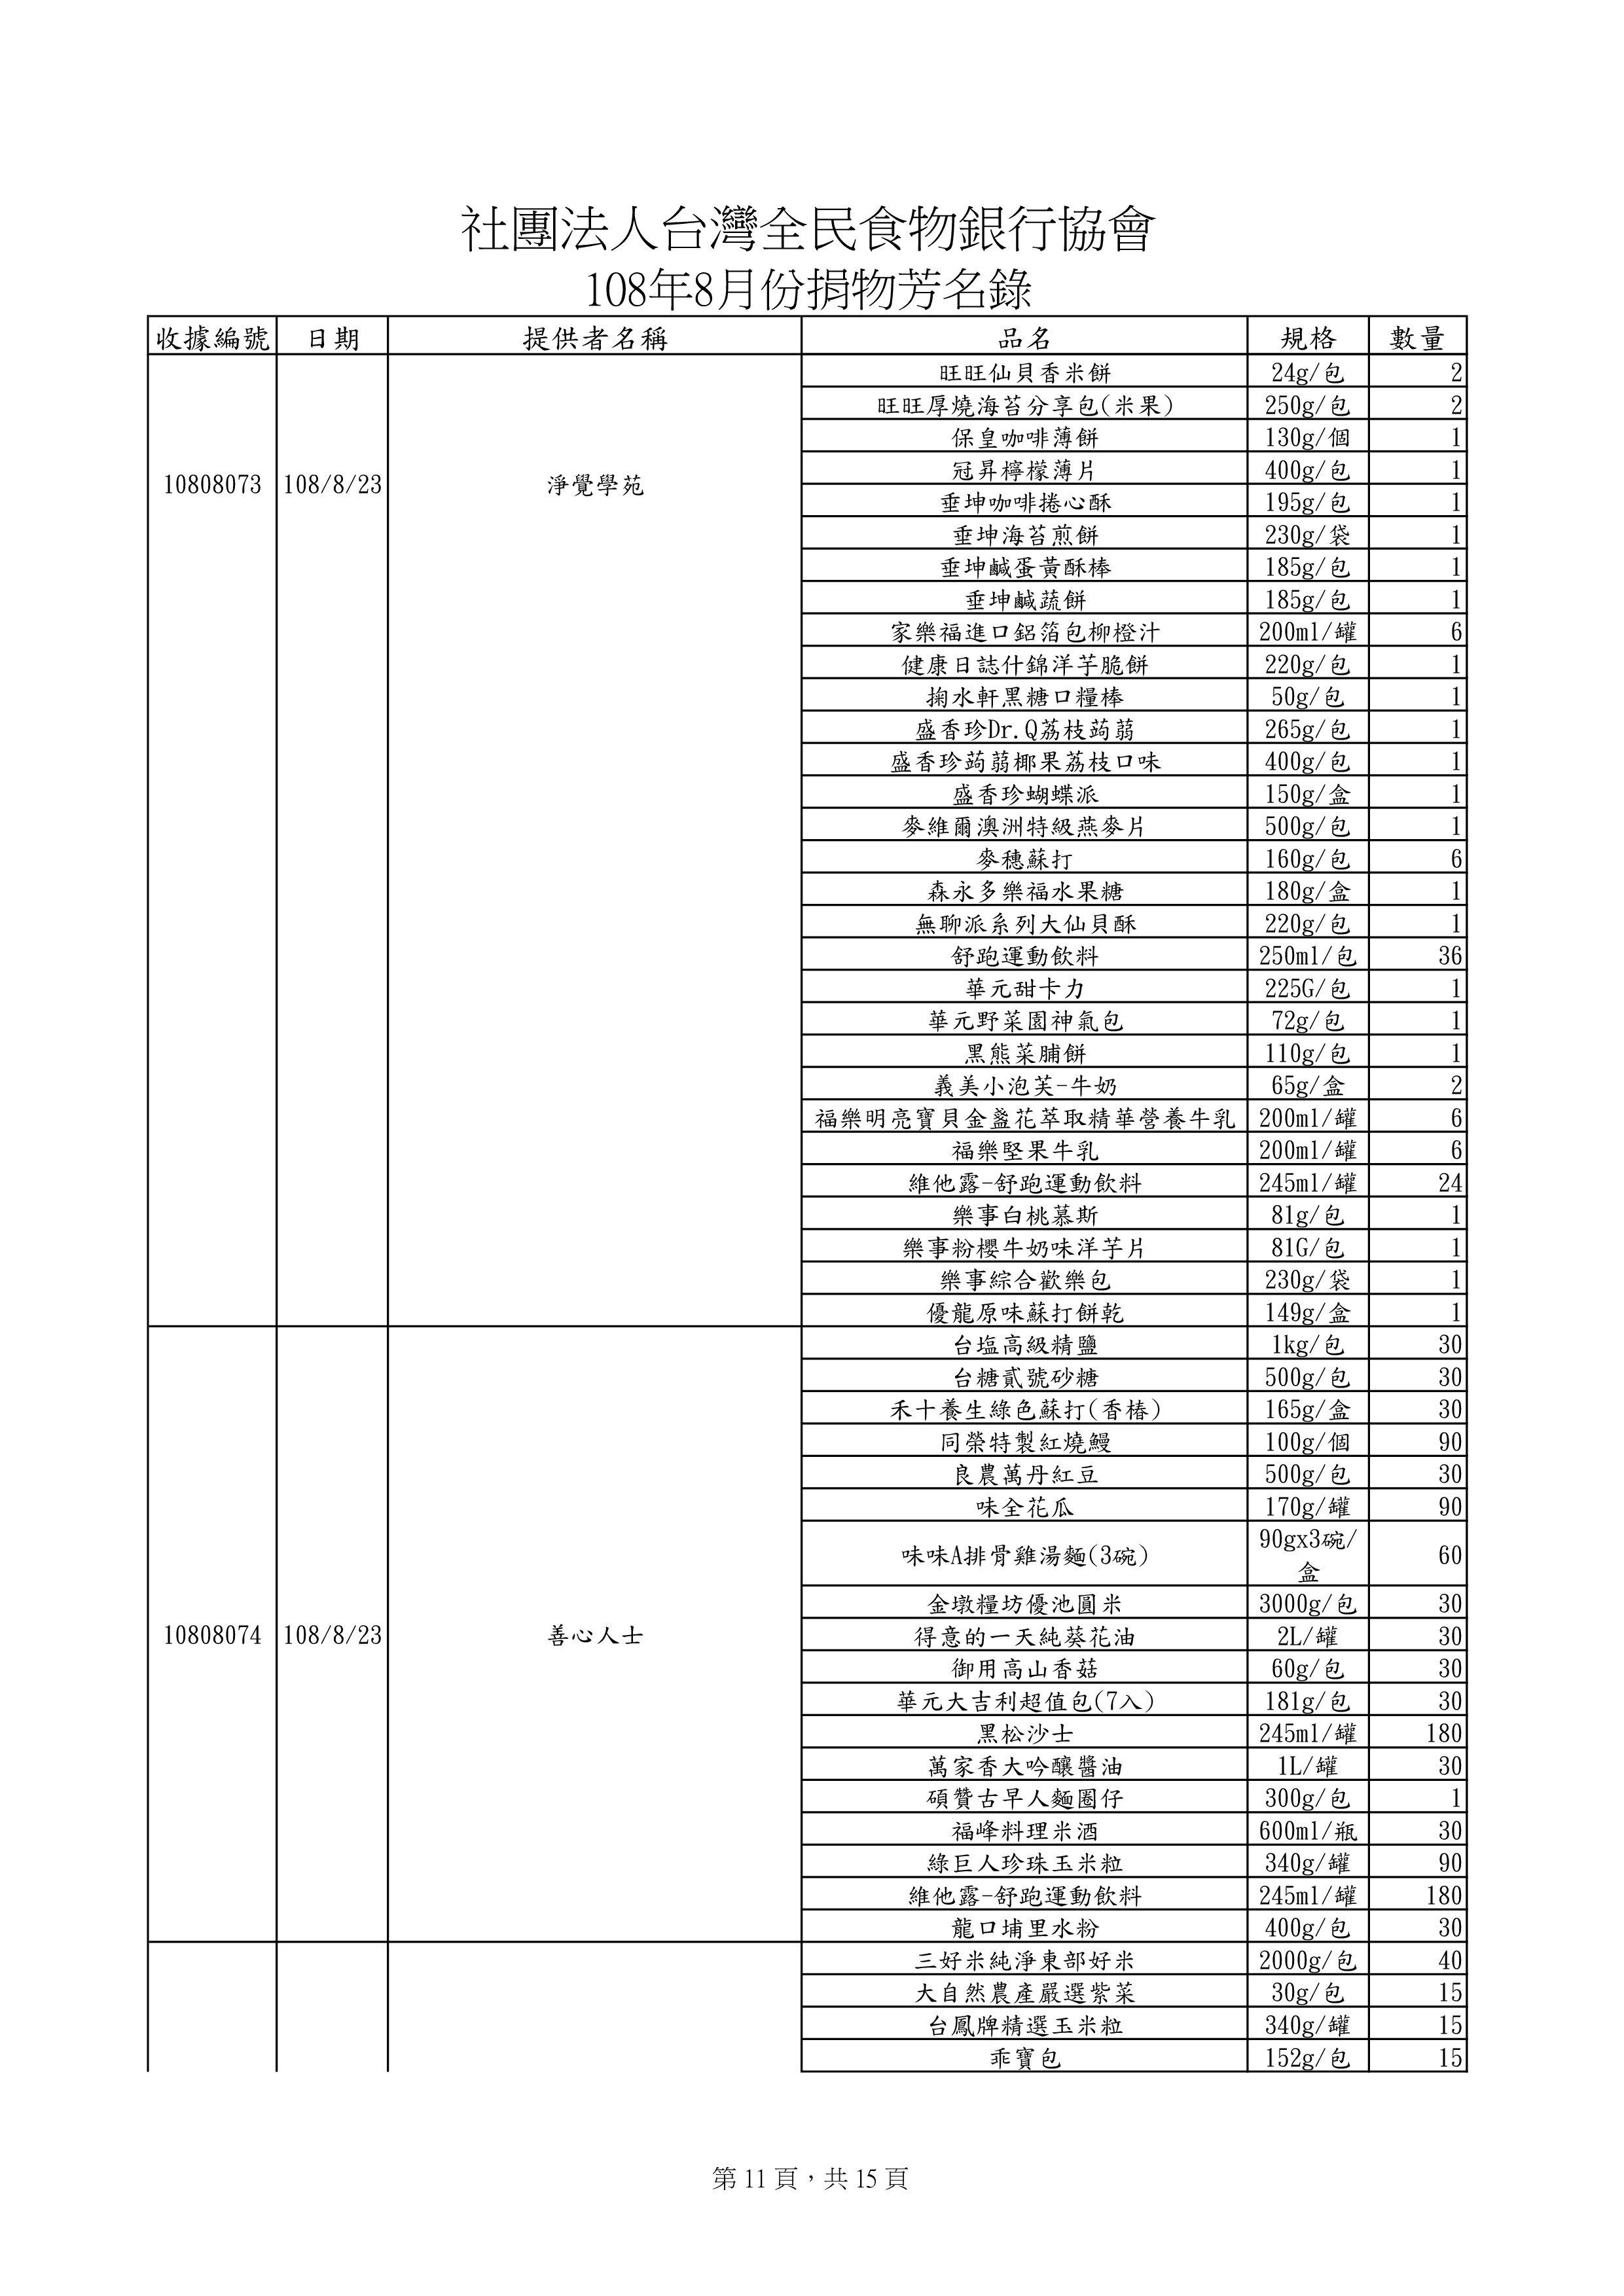 捐贈物品清單2019-8月份(系統報表)-10.jpg